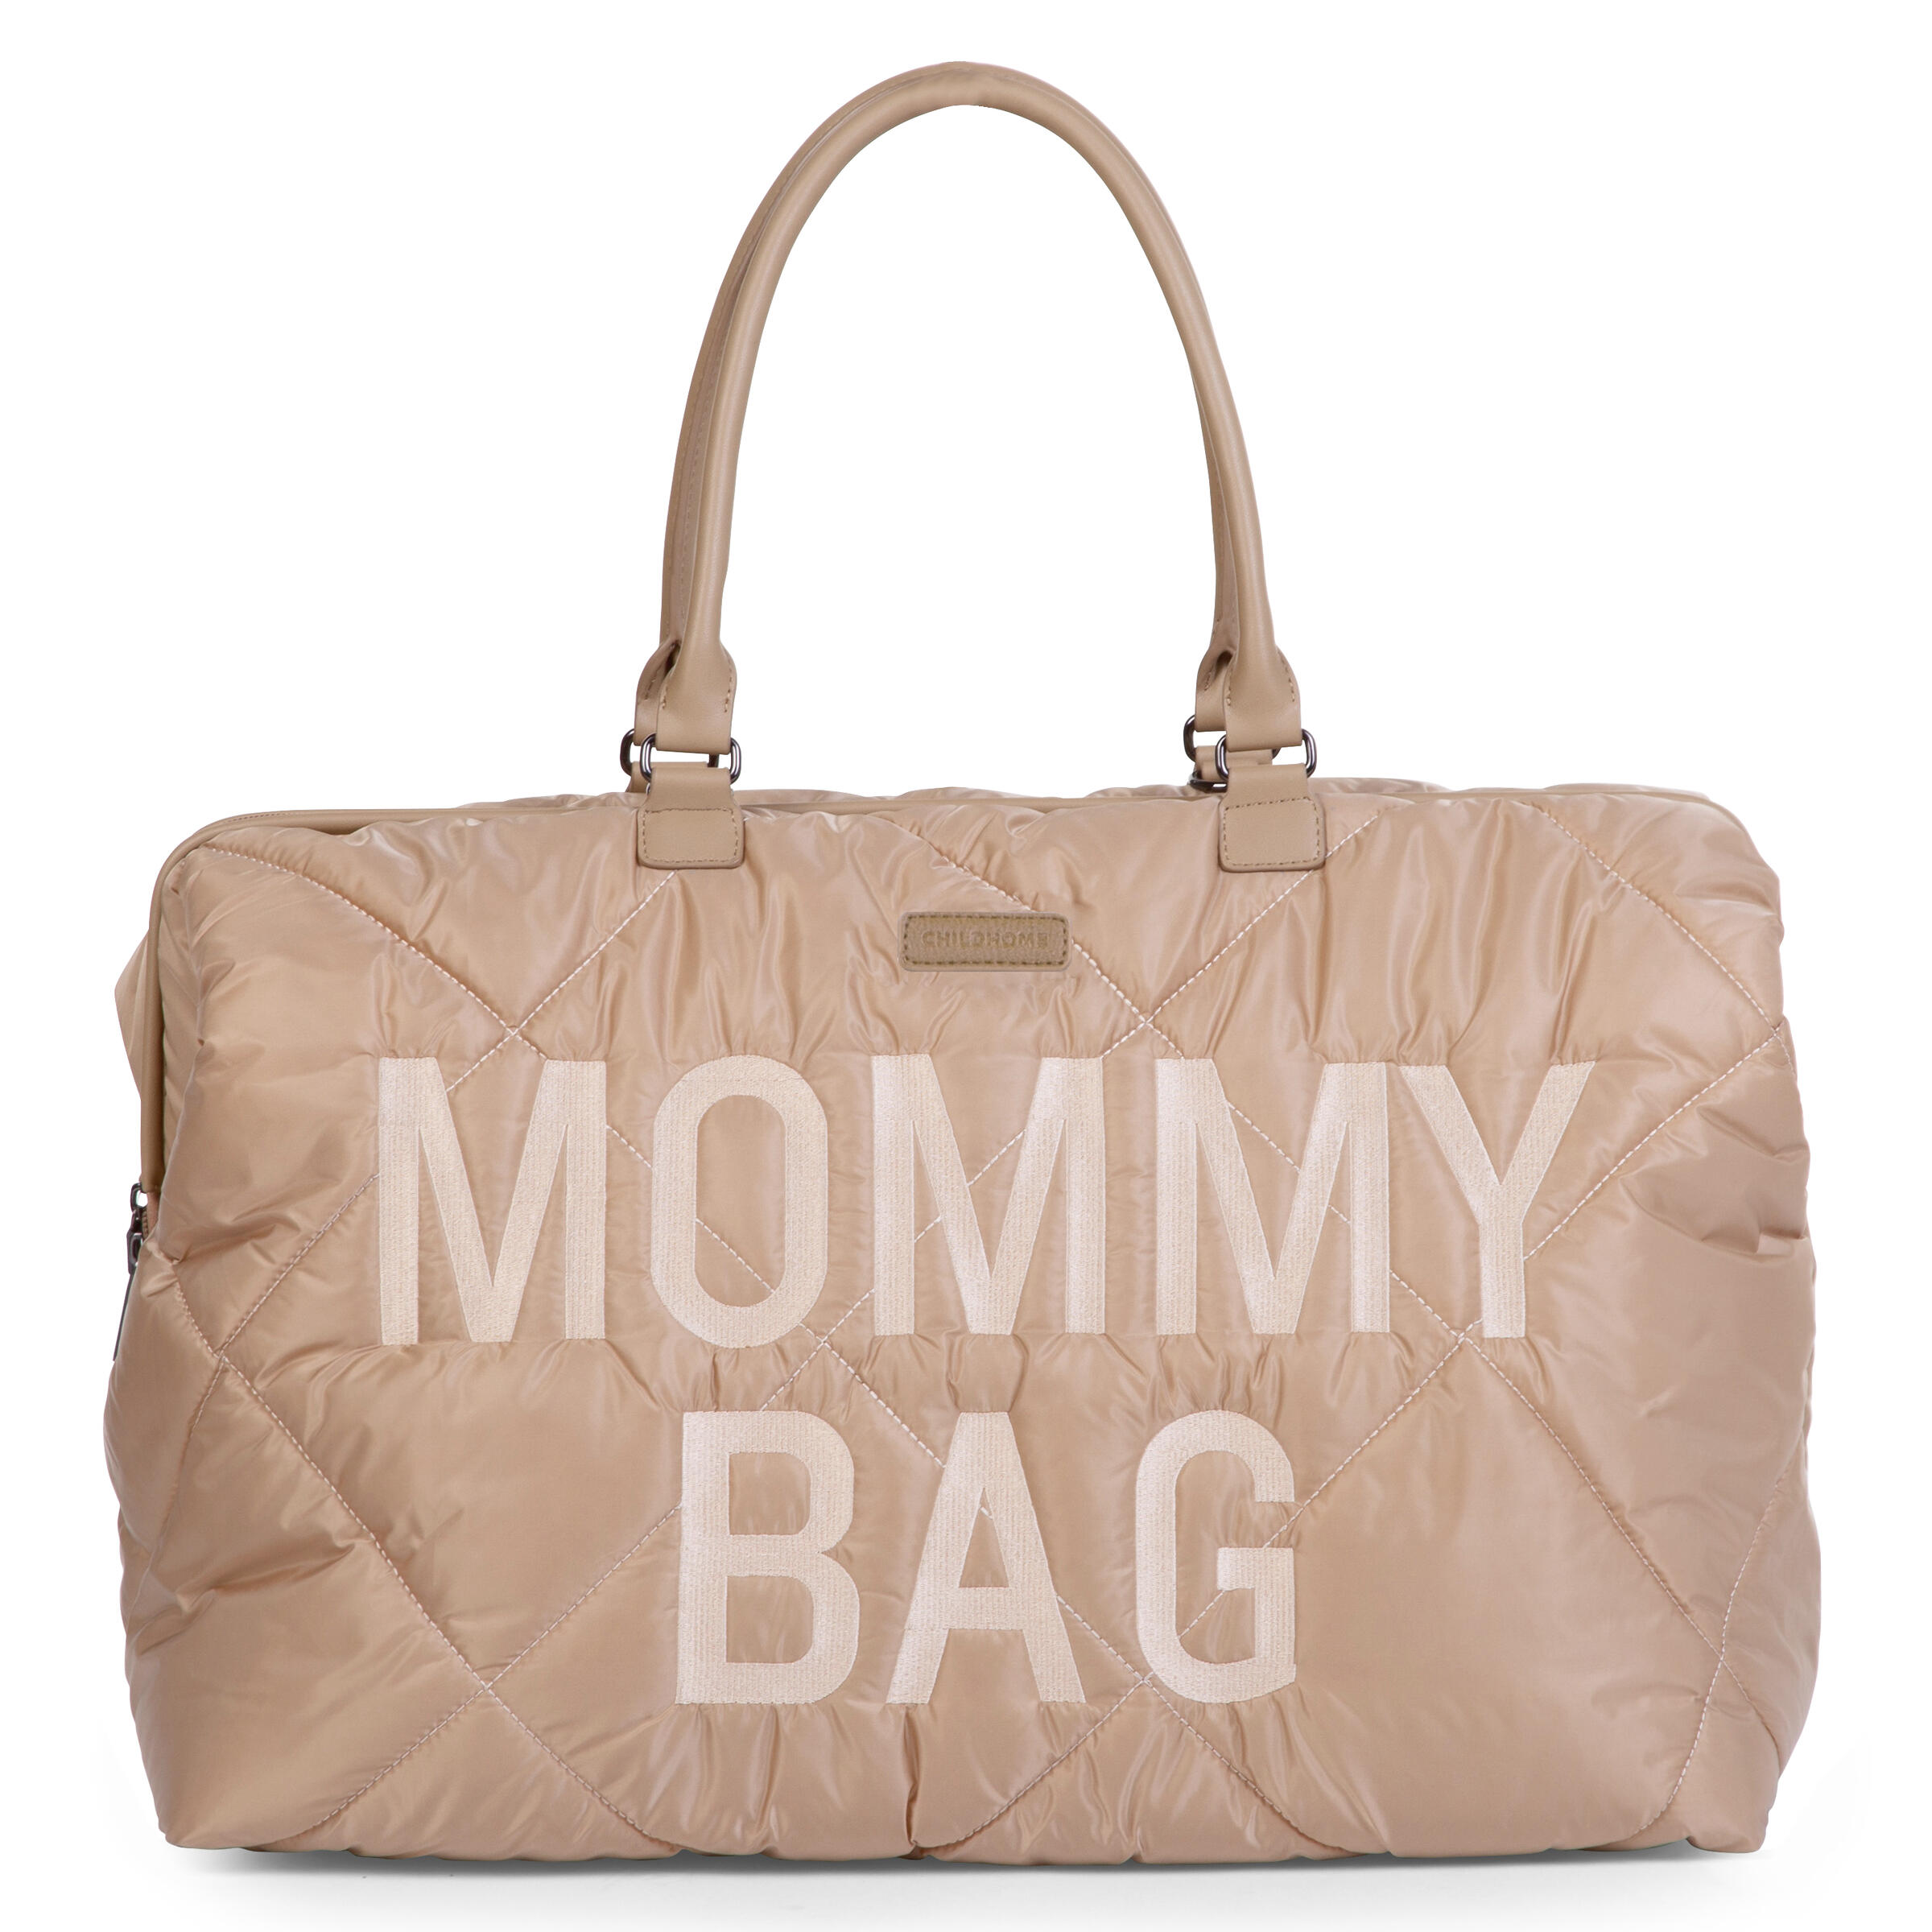 Mommy Bag Wickeltasche - Gesteppt - Beige